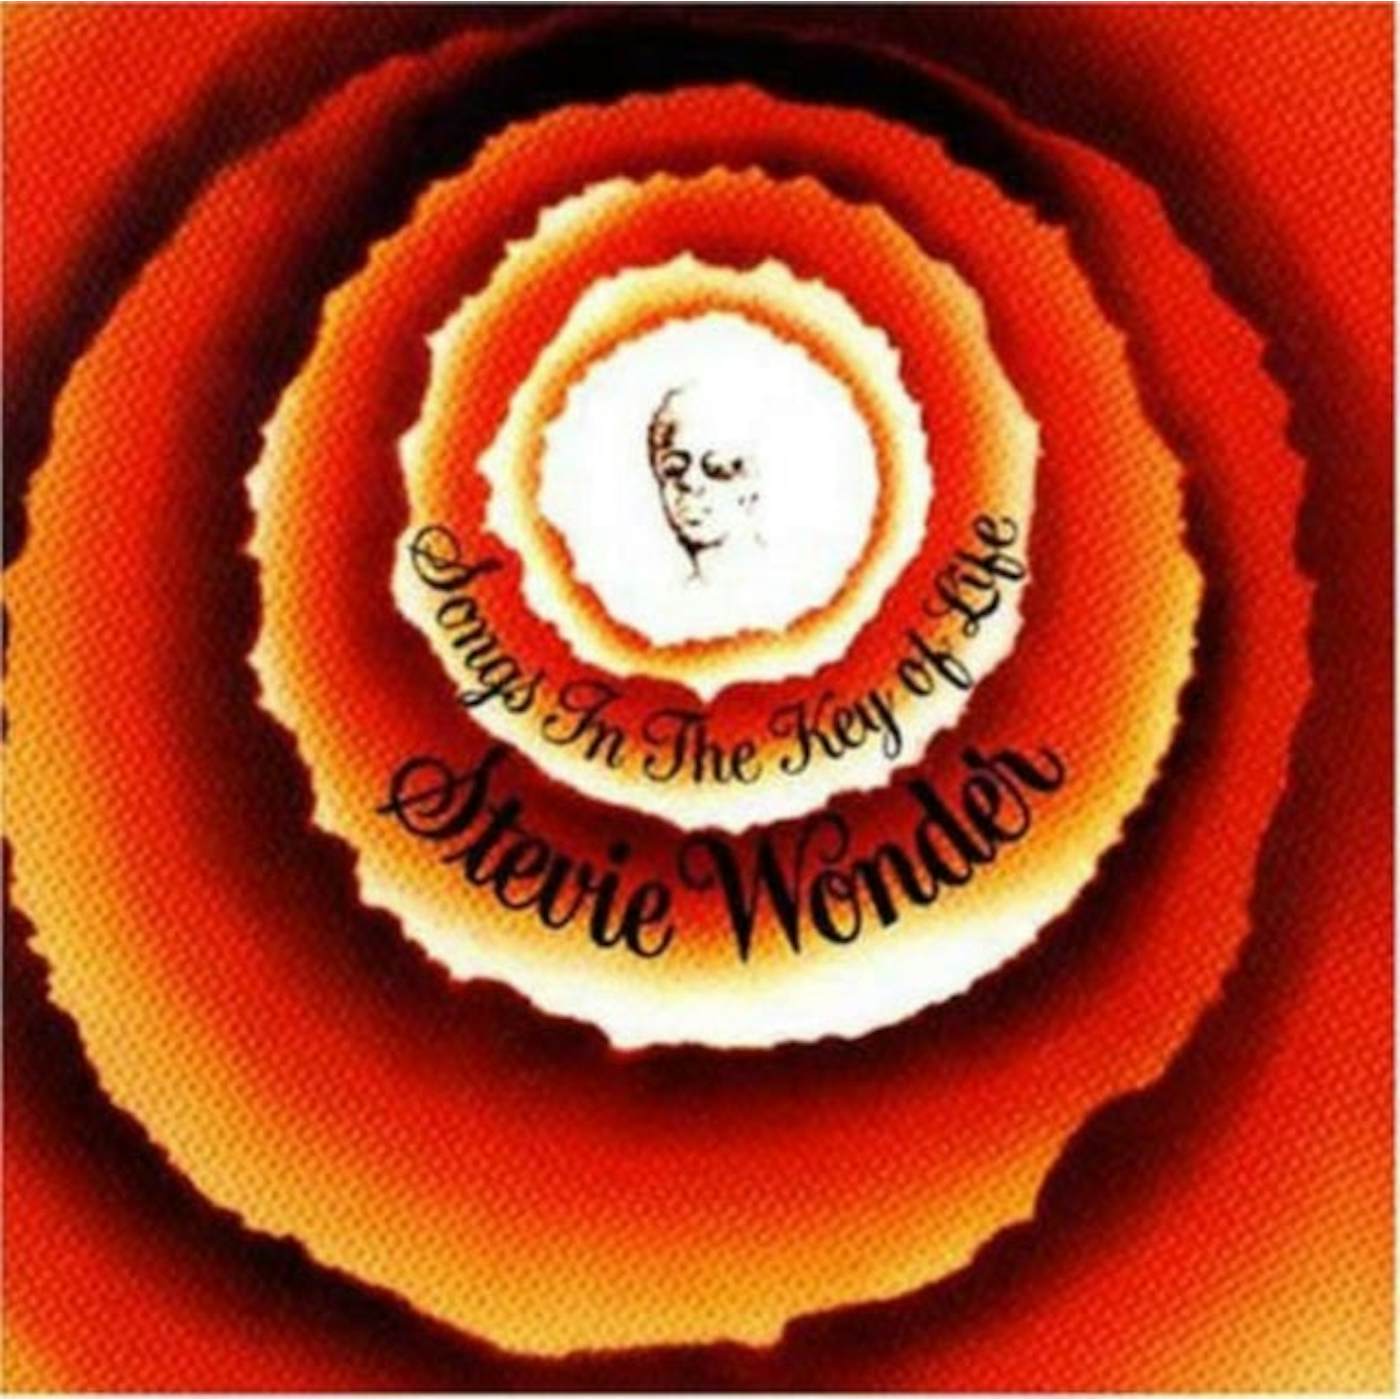 Stevie Wonder LP Vinyl Record - Songs In The Key Of Life